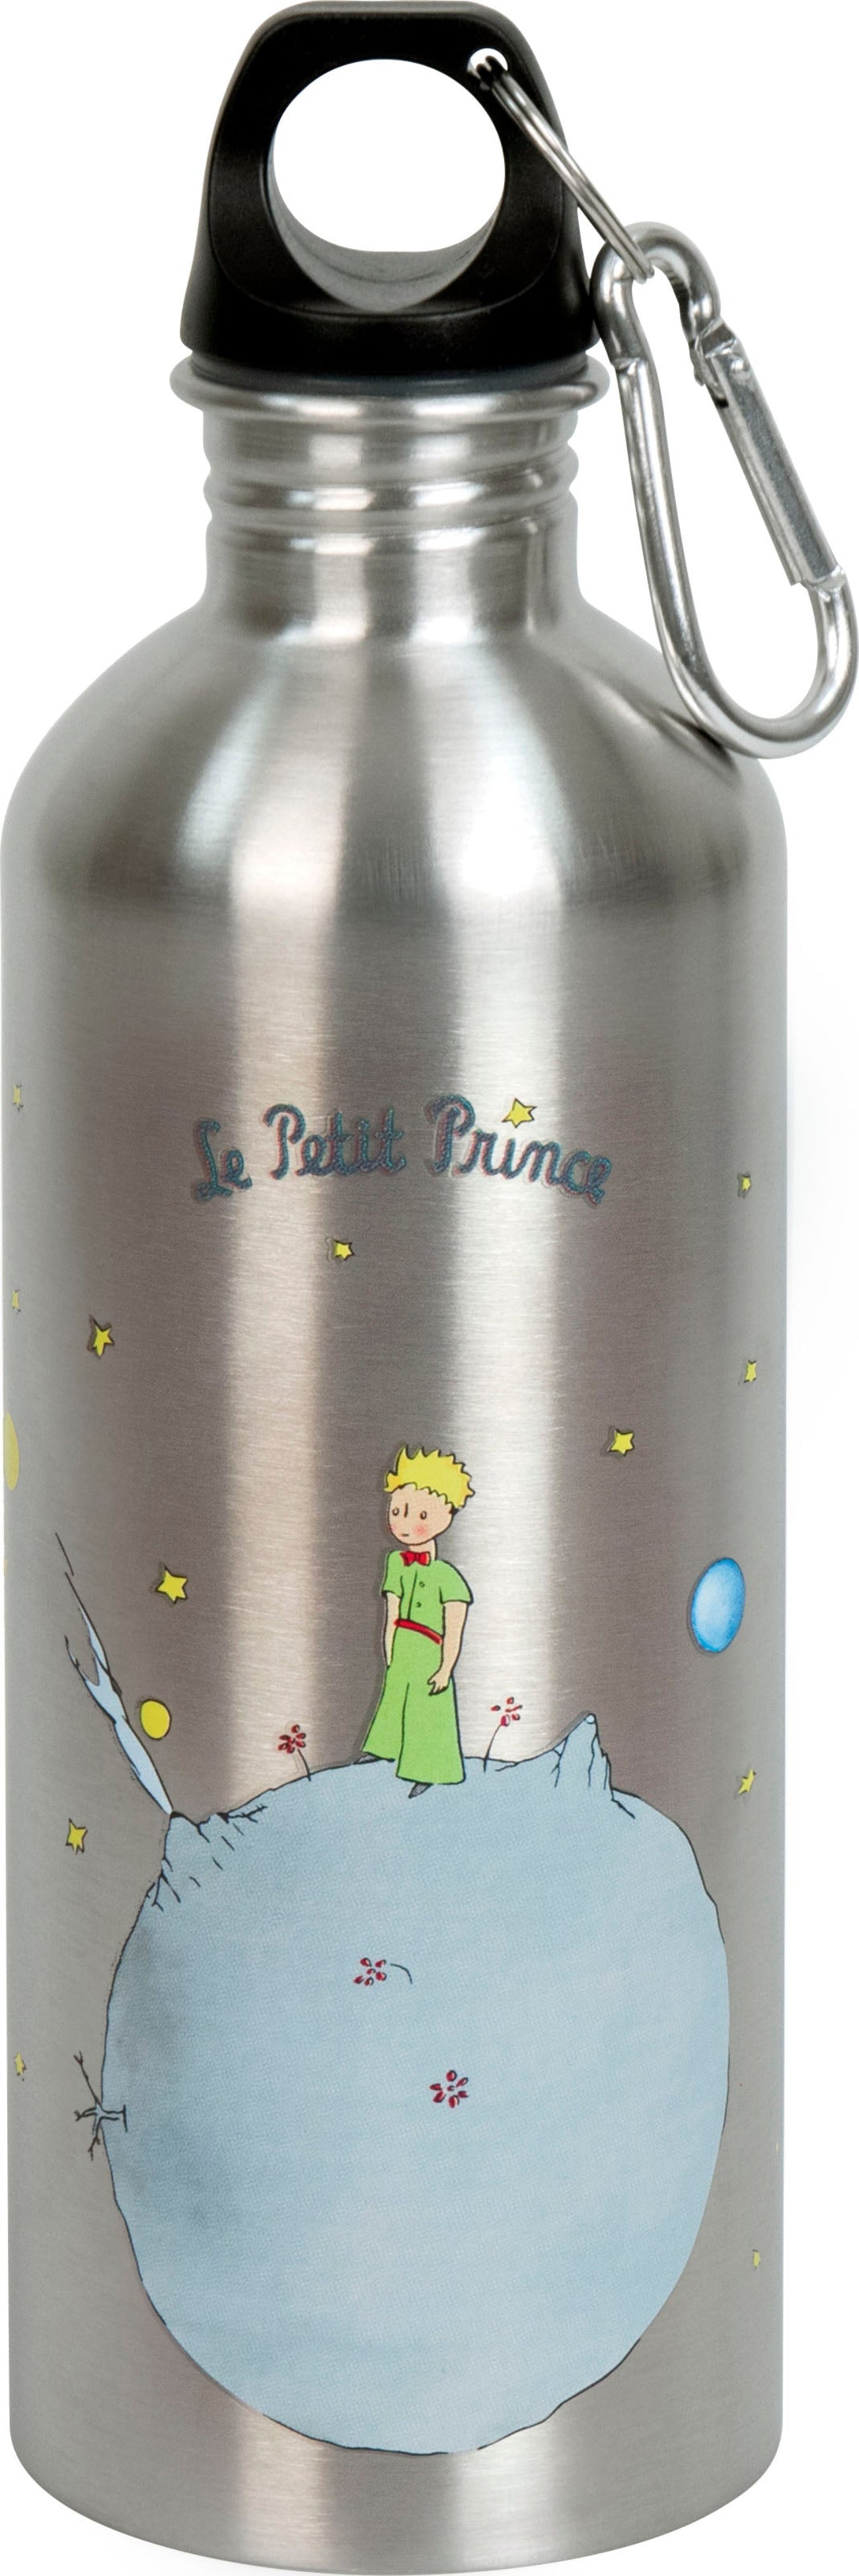 Edelstahlflasche Cool Bottle Der Kleine Prinz